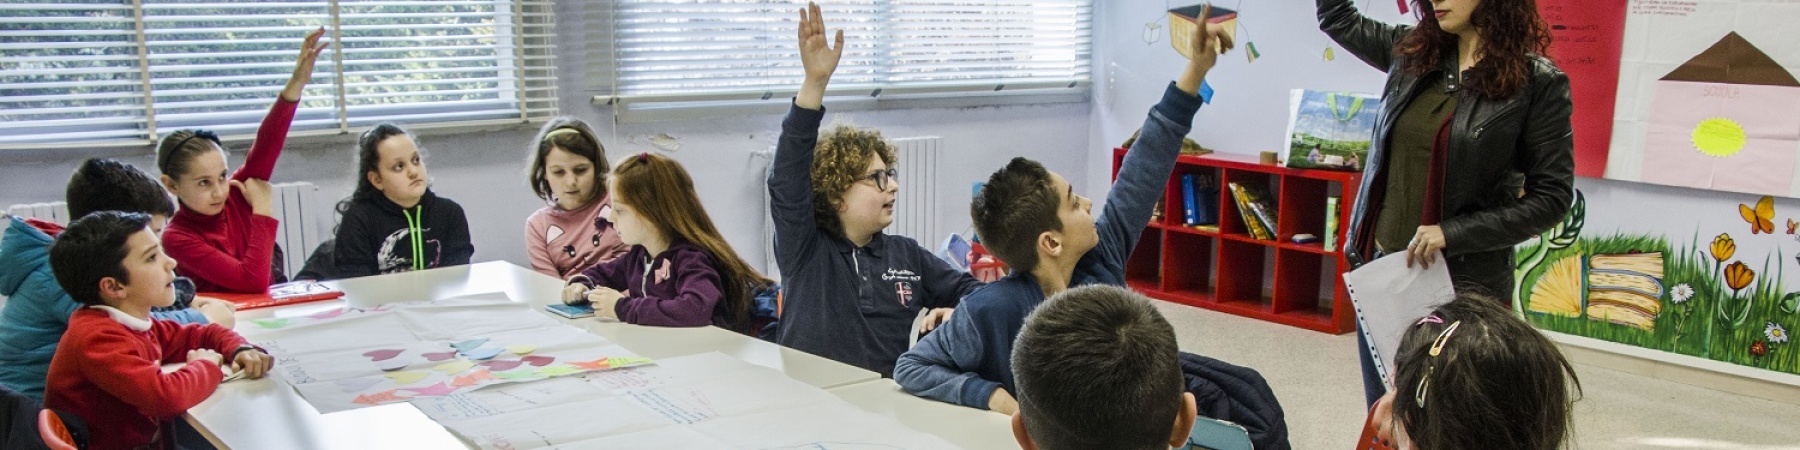 una decina di bambini seduti a un banco di scuola alzano la mano alla domanda della maestra